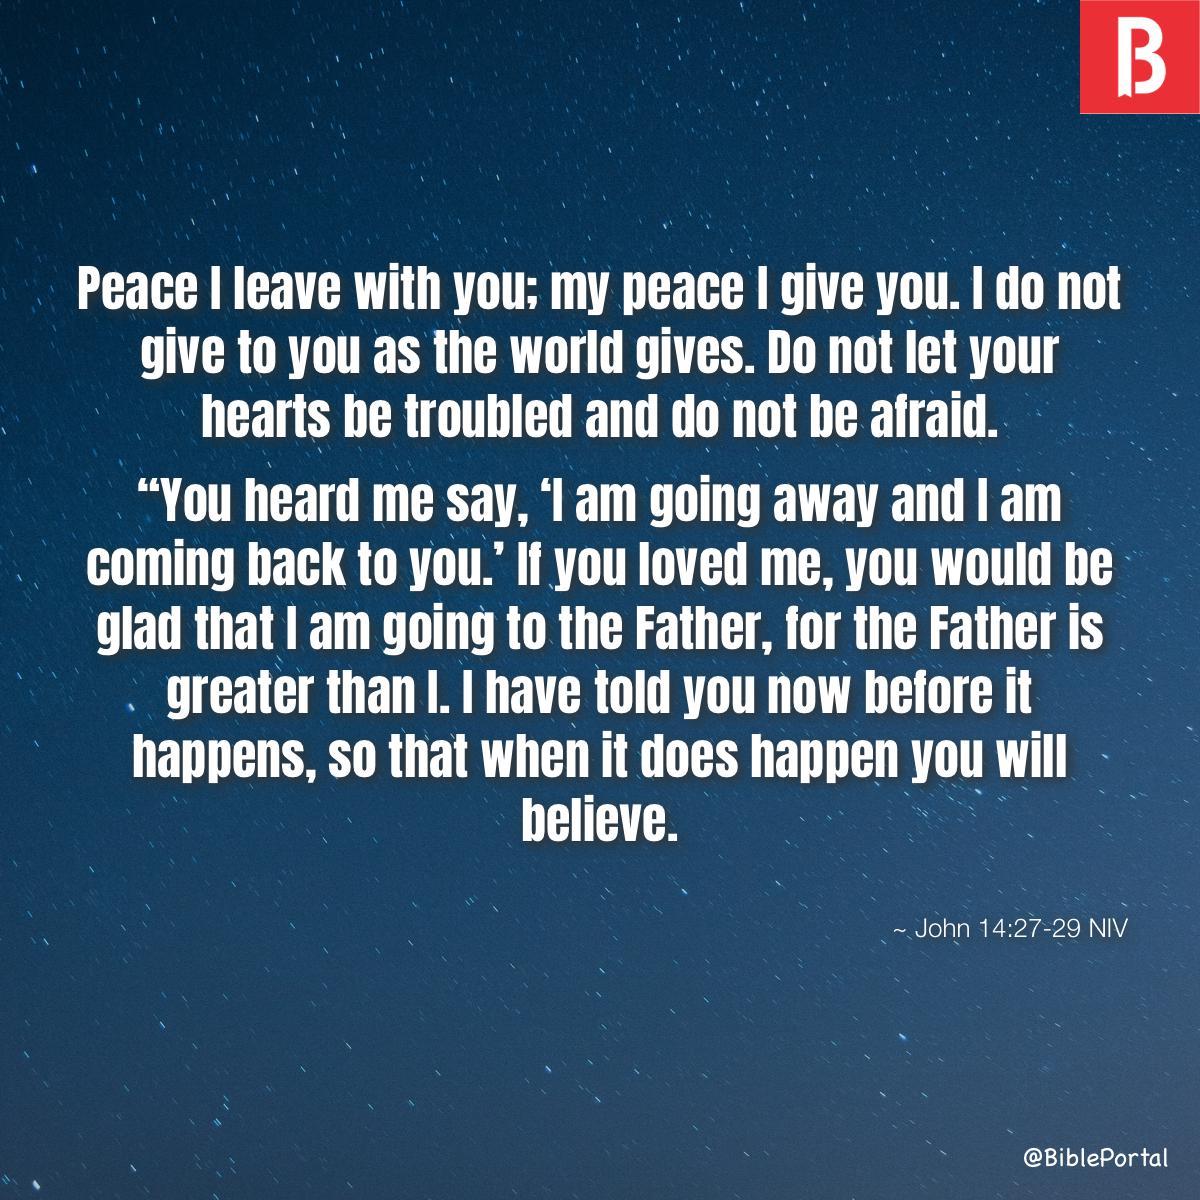 John 14:27-29 NIV